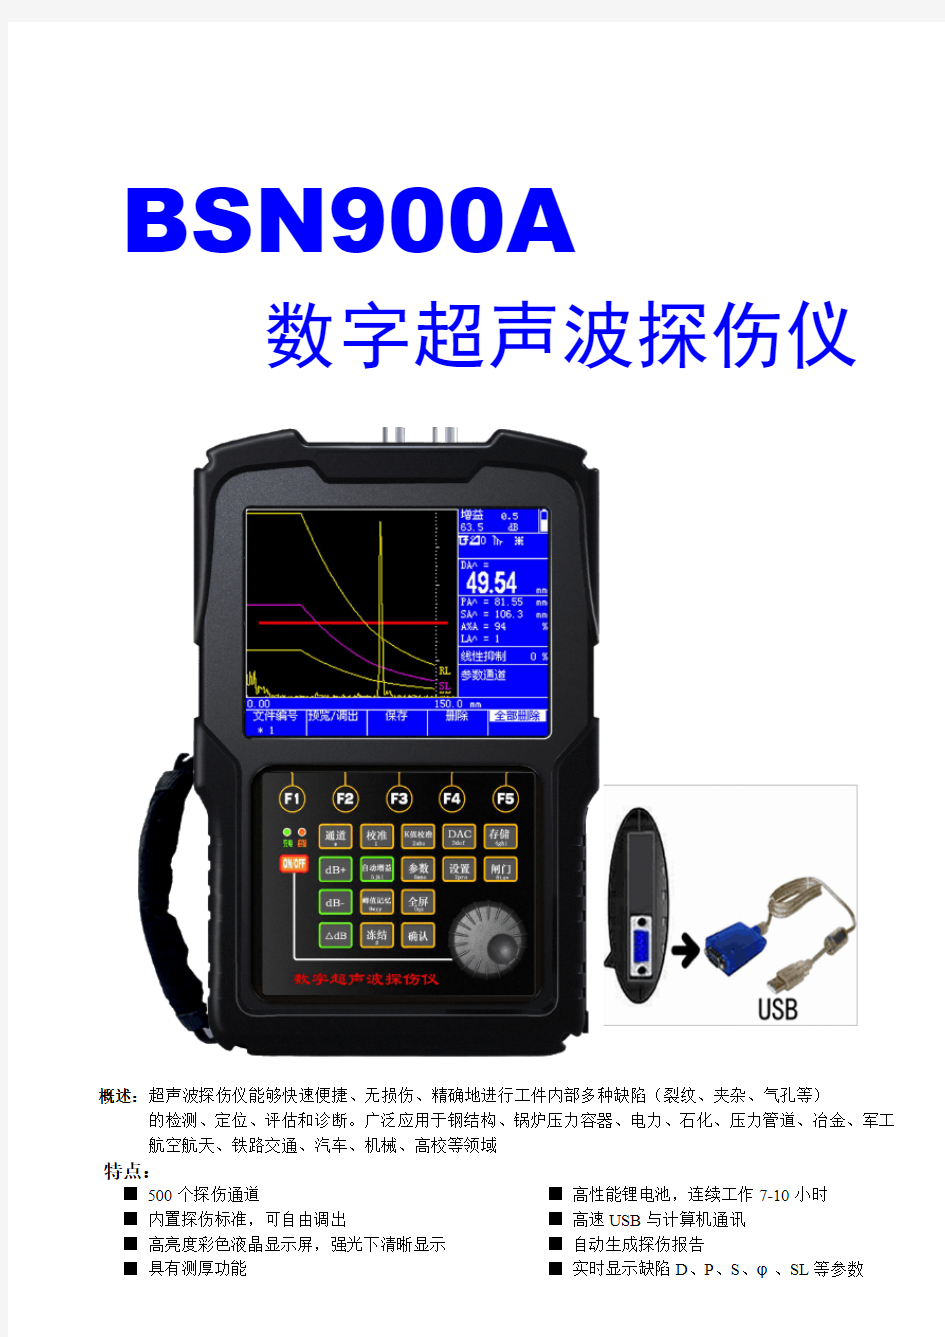 BSN900A数字超声波探伤仪-图片中性